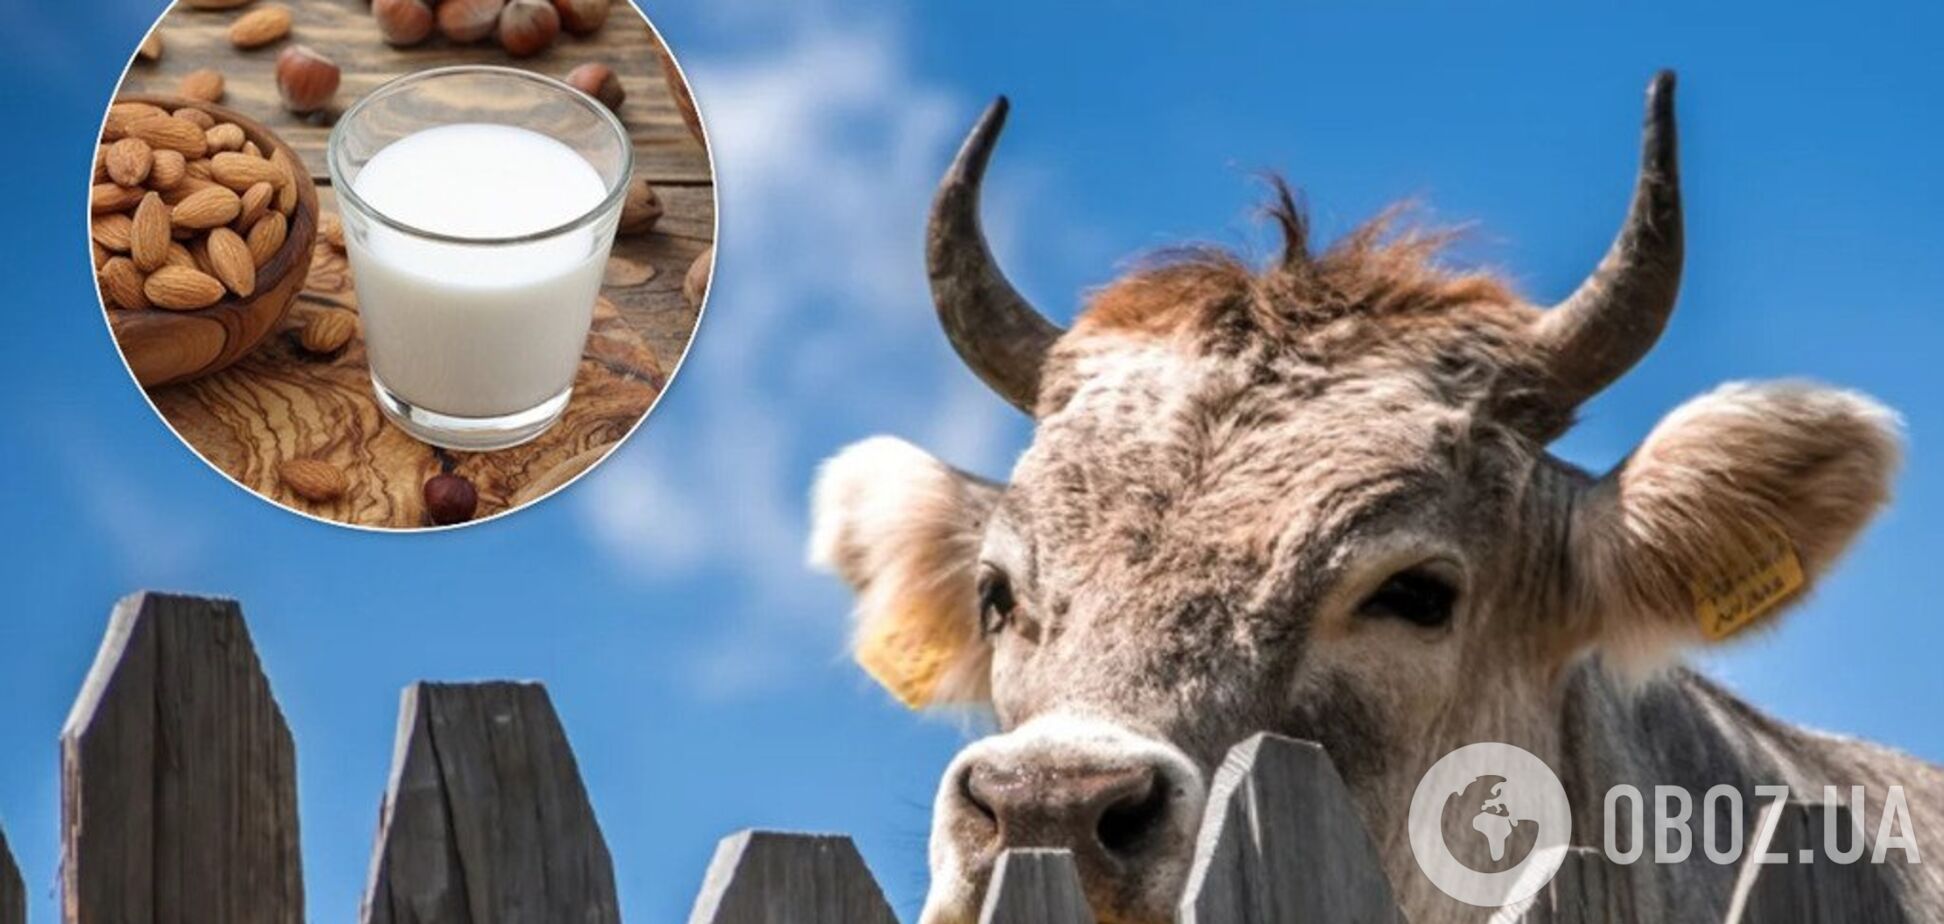 Коровье молоко или растительное: что полезнее